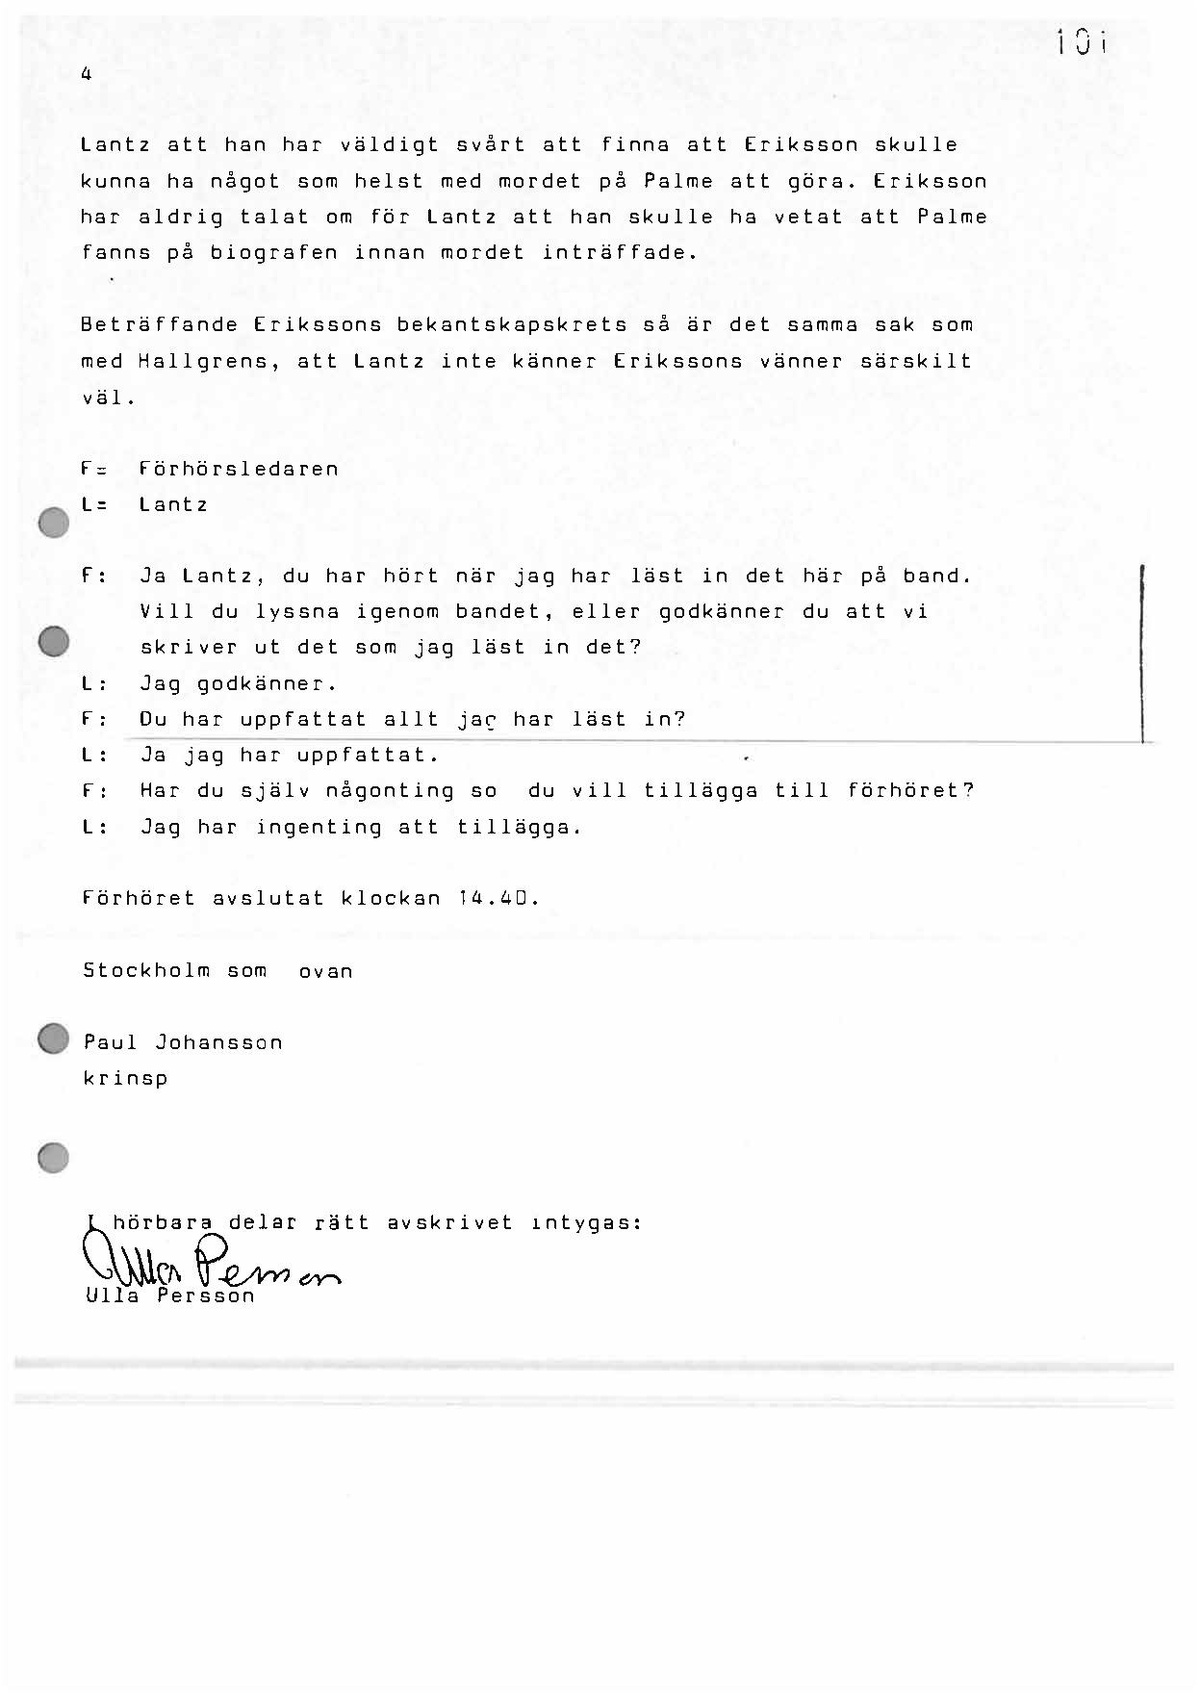 Pol-1987-02-20 1400 L846-06-D Bertil Lantz.pdf